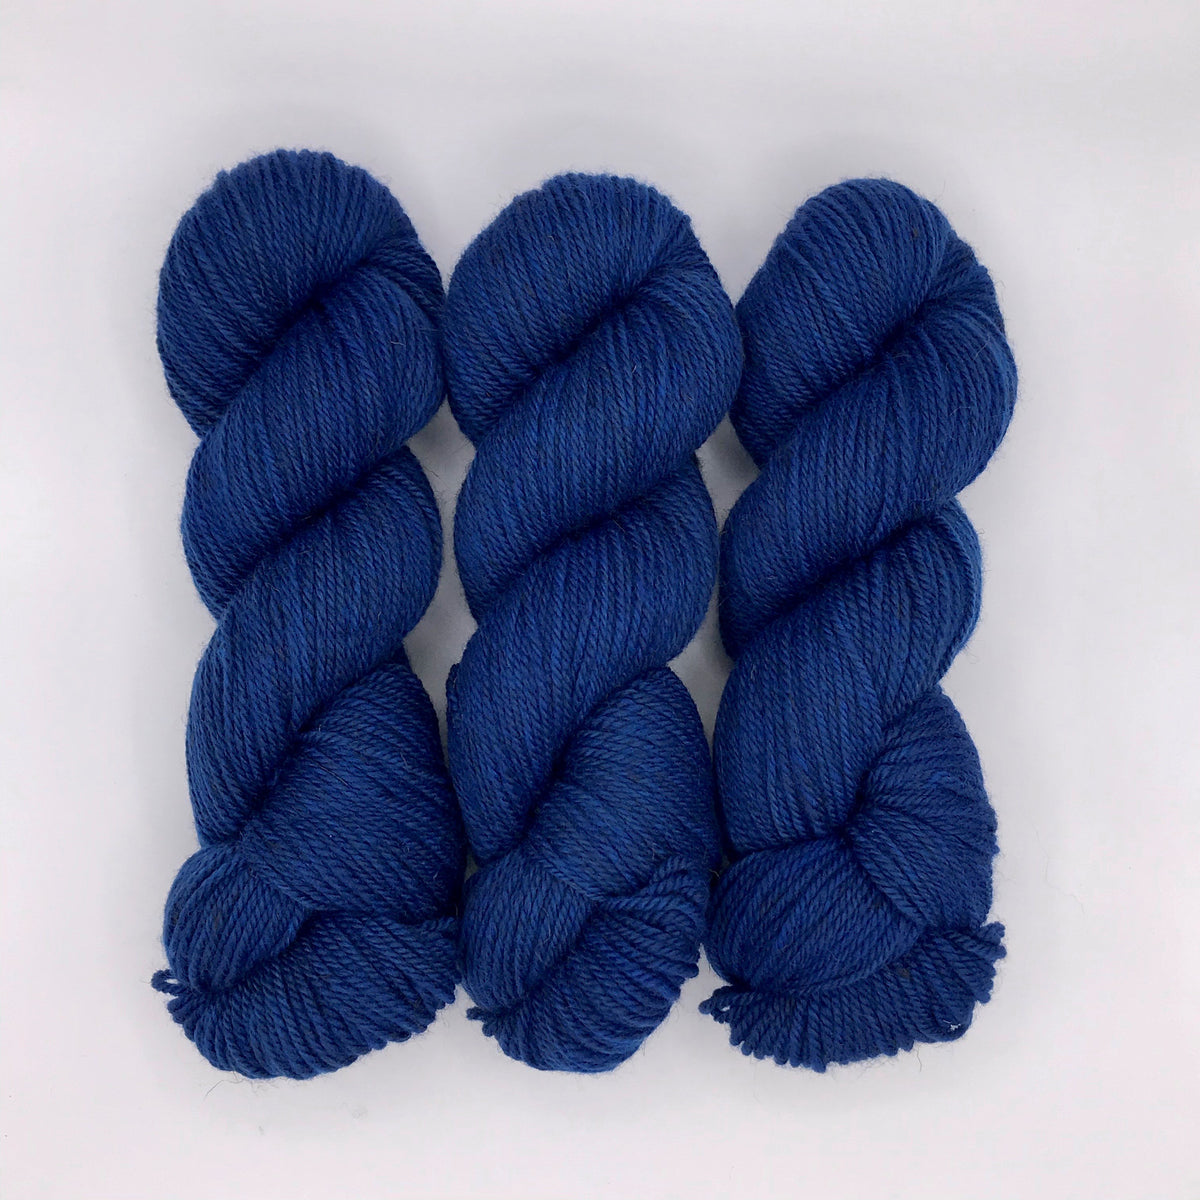 Classic Blue-Lascaux DK - Dyed Stock